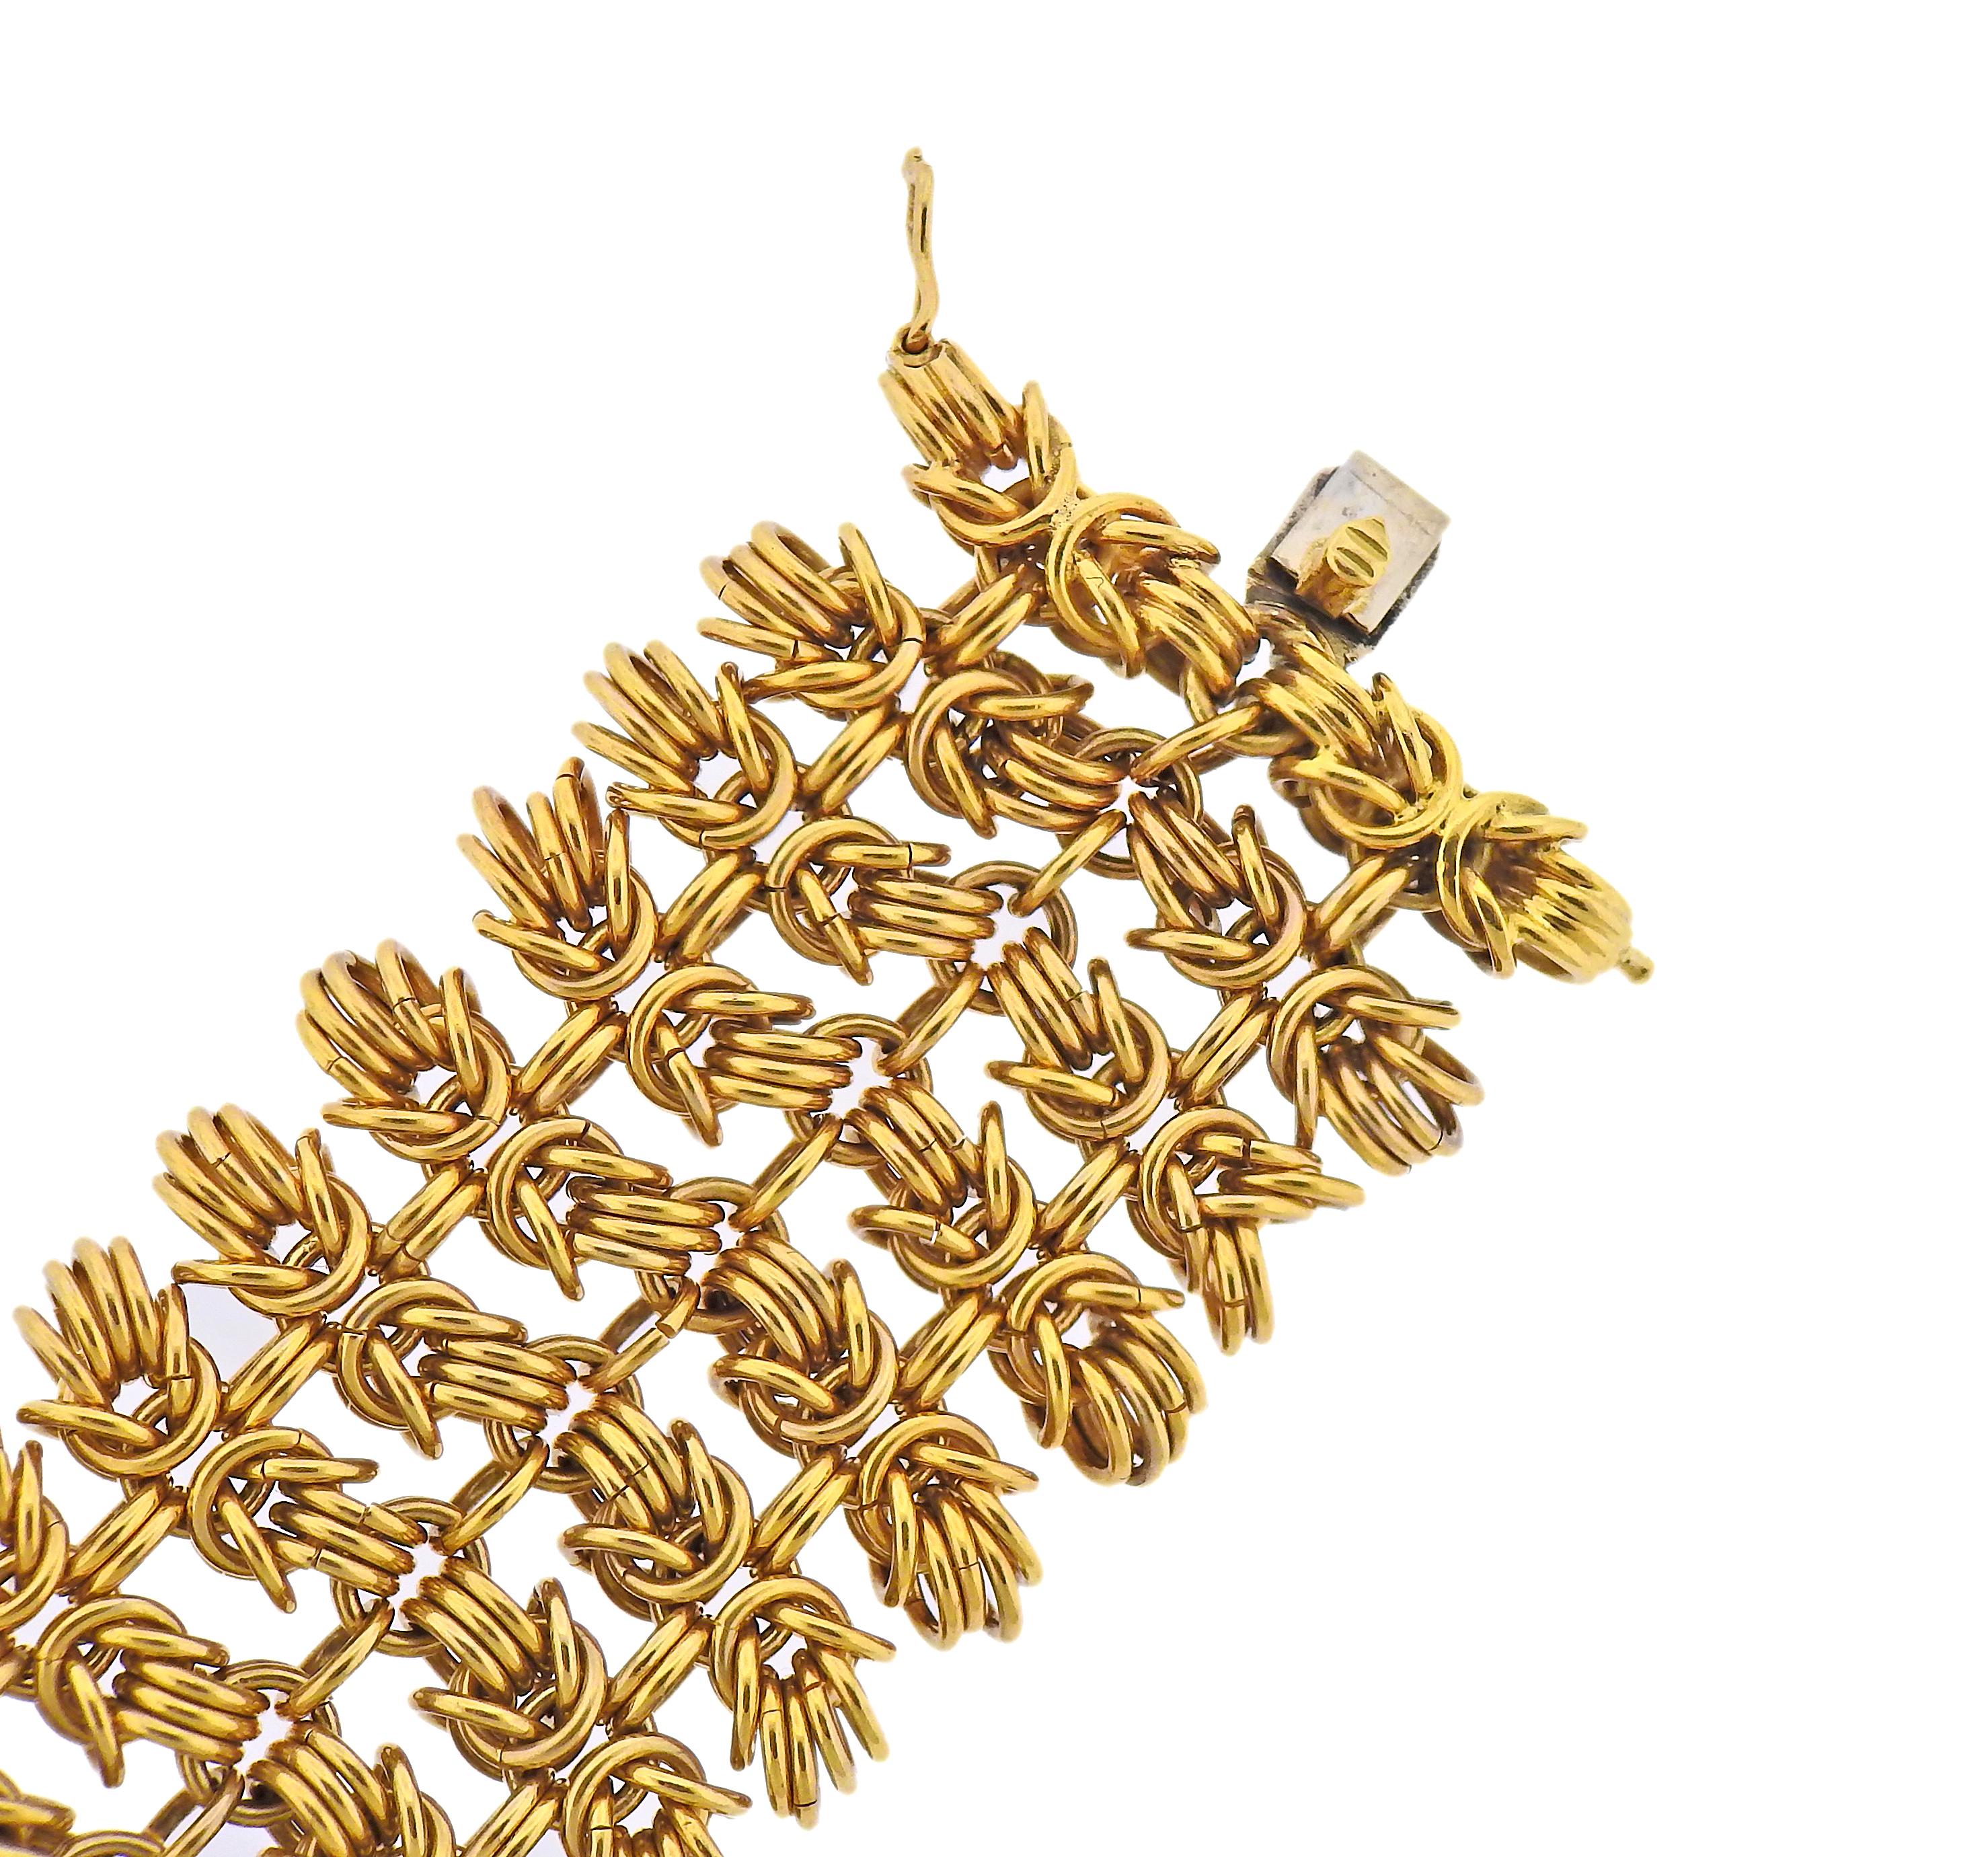 Vintage 18k gold bracelet by Bvlgari, featuring interlocked Hercules knot links. Bracelet is 7 5/8